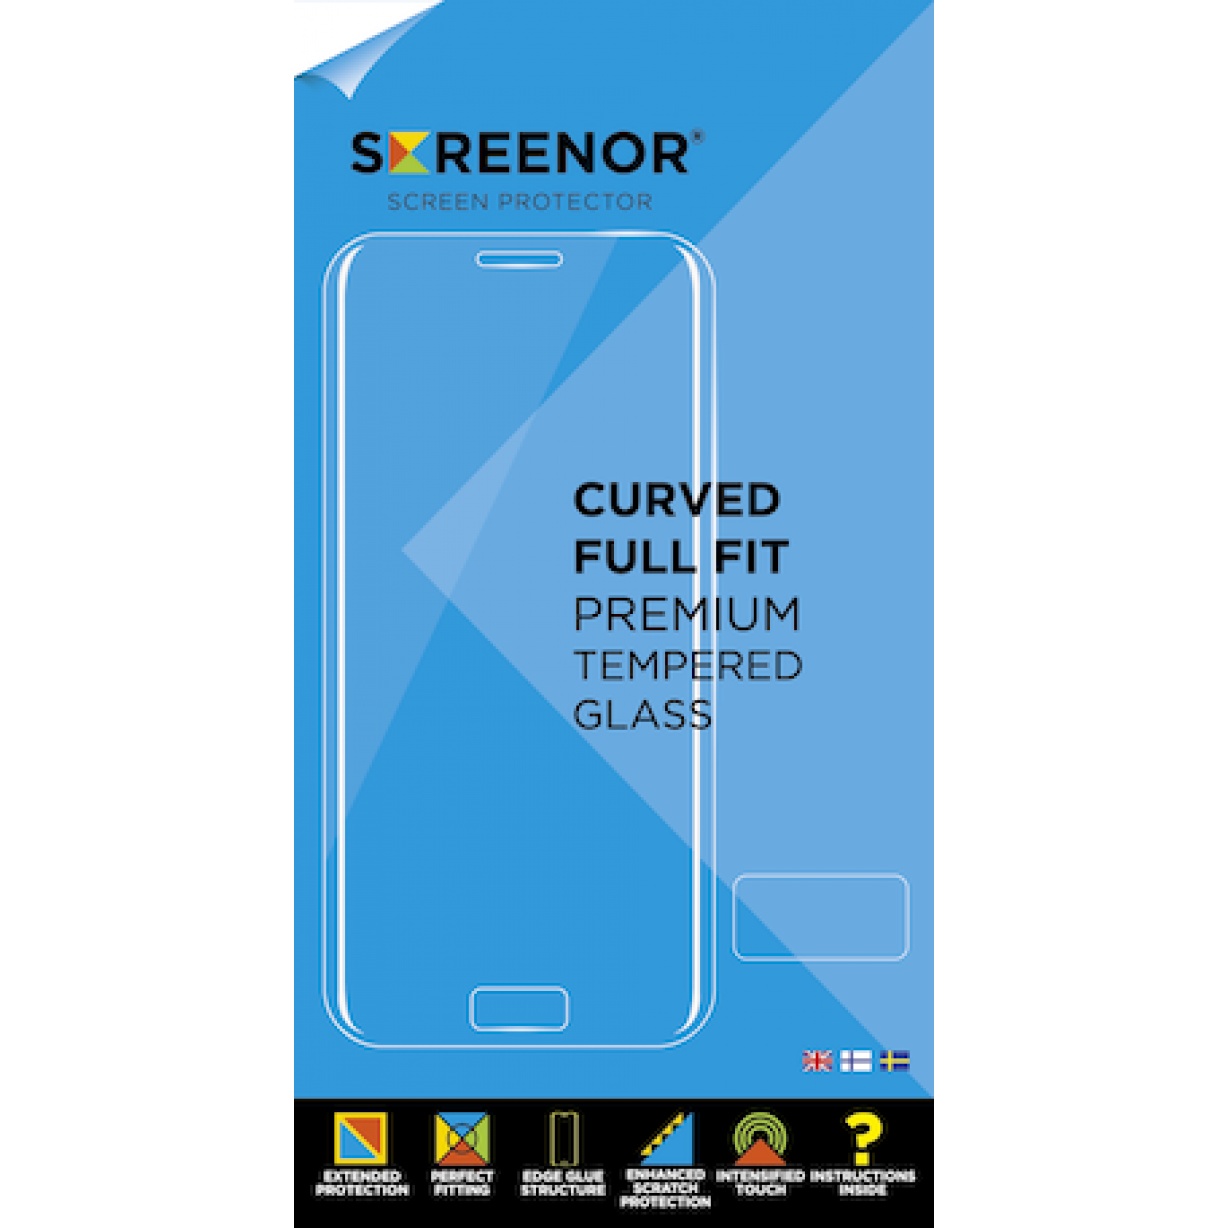 Apsauginis stiklas Screenor Curved Premium Tempered Glass Nokia 6